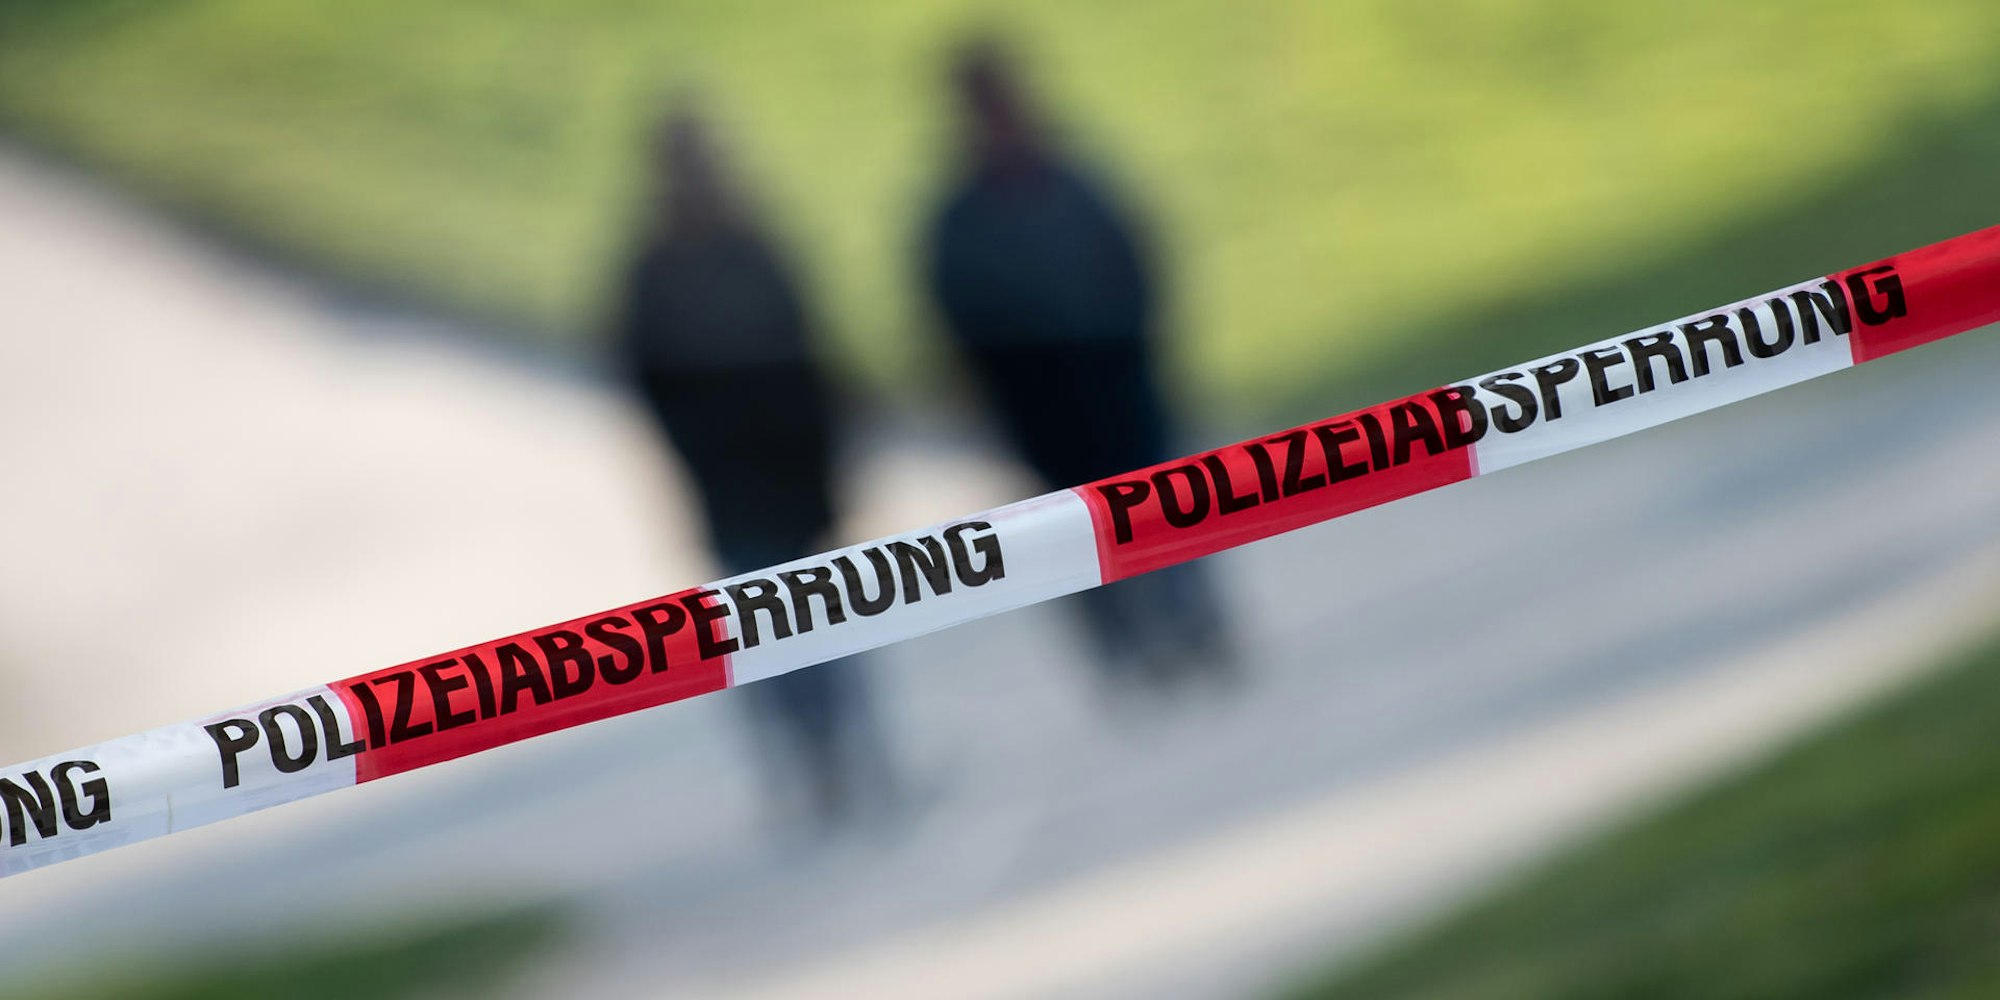 Polizei_Absperrung_